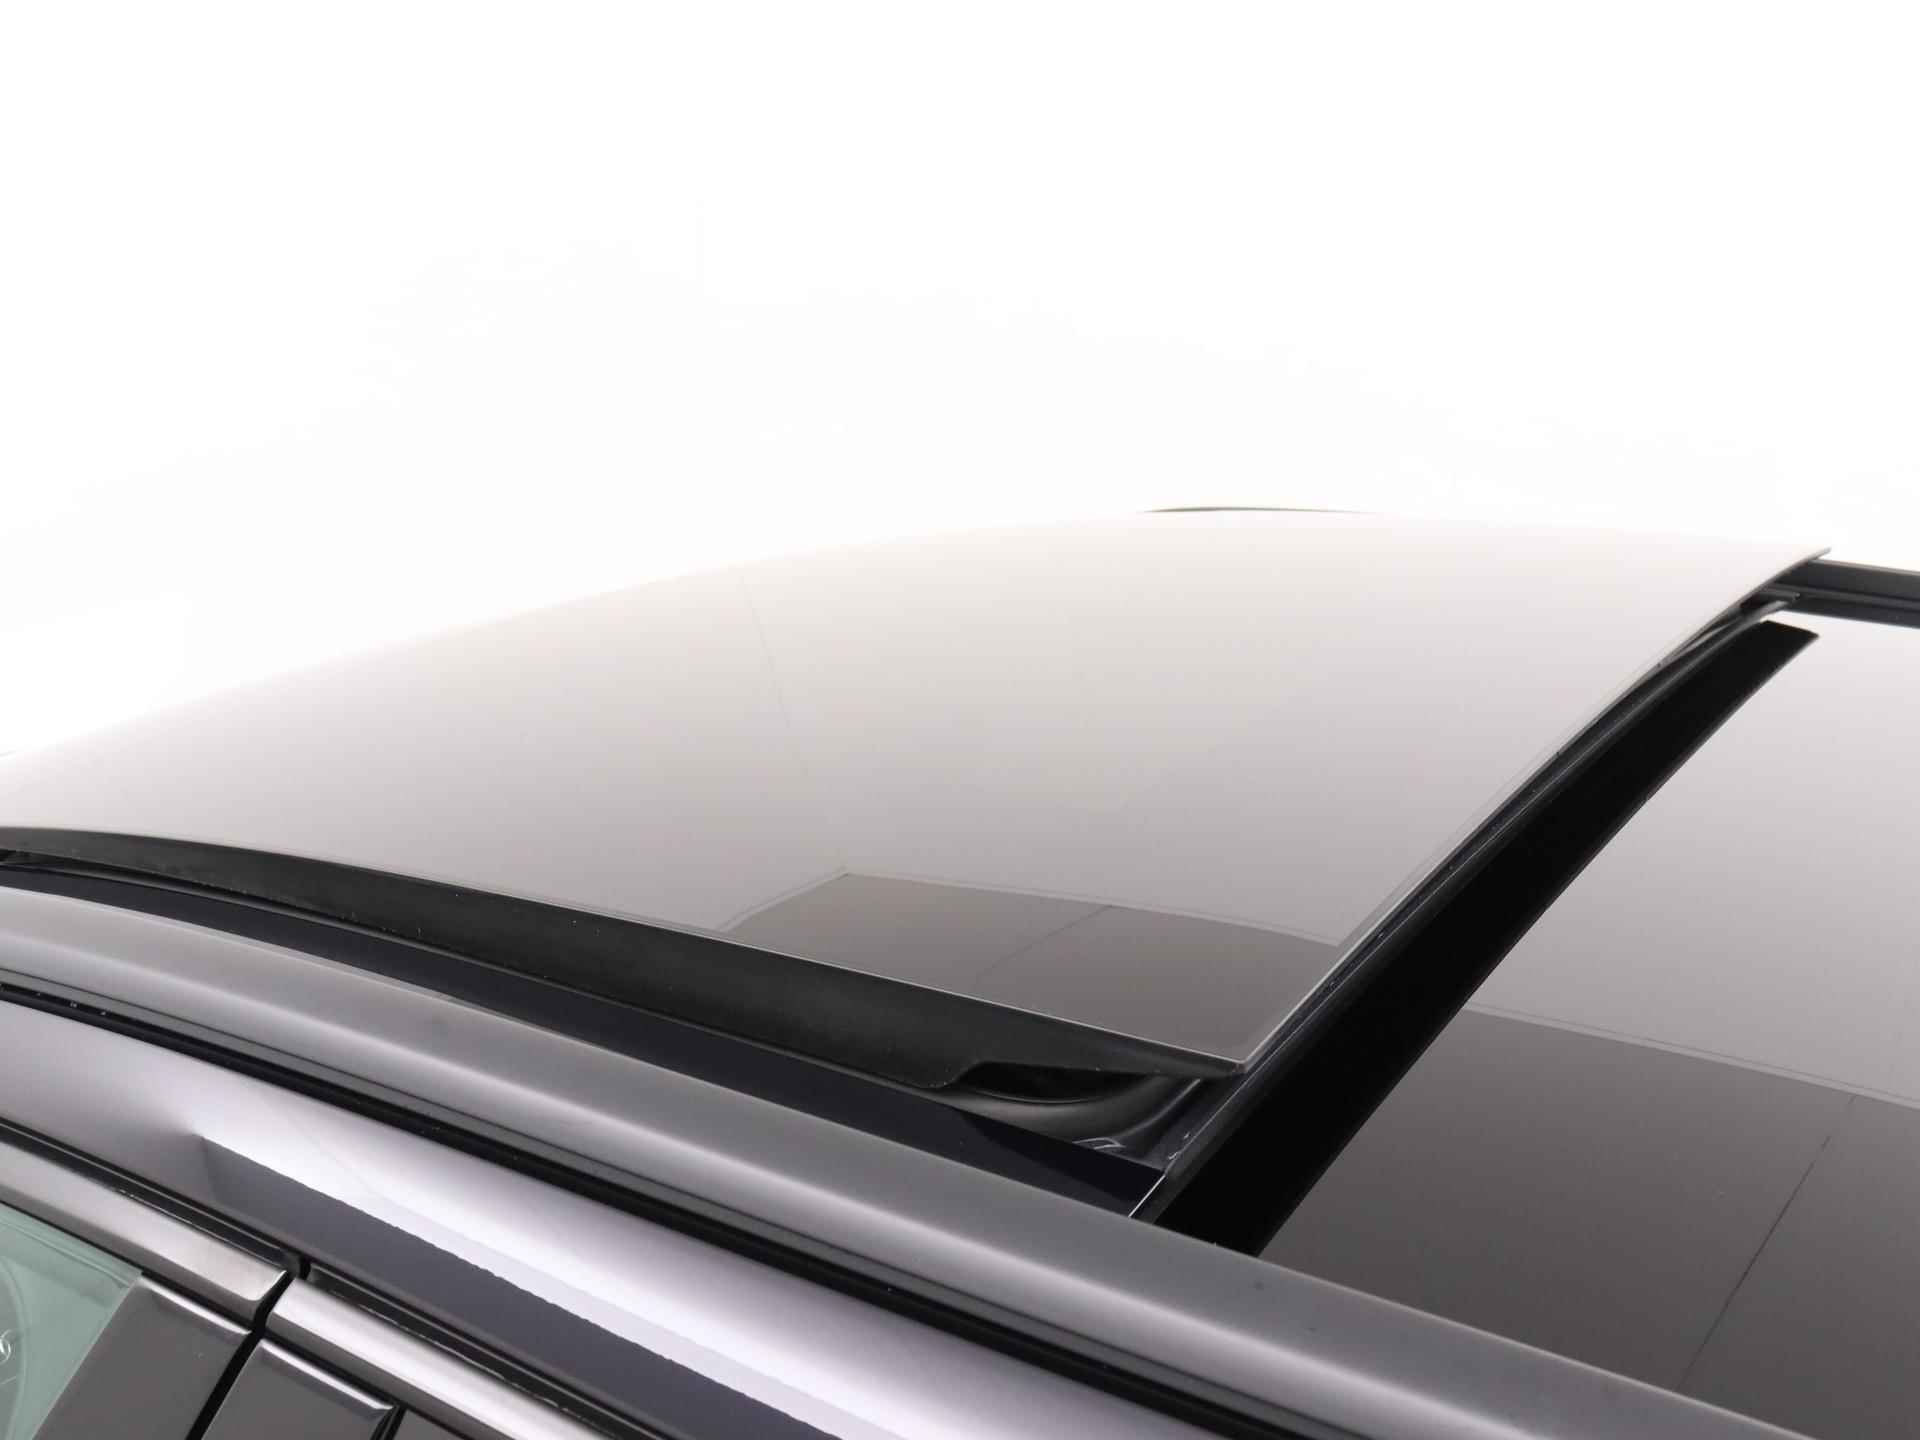 Audi RS6 TFSI quattro 600 PK | Head-up display | Bang & Olufsen Soundsystem | 22 inch lm velgen | RS Dynamic Pakket Plus | RS Design pakket Rood |Optiekpakket Zwart Plus | Panorama dak | RS Sportuitlaat | Keramische remschijven Rood | RS Sportonderstel Plus | Servosluiting deuren | Nu € 36.129,- ACTIEKORTING! | DIRECT LEVERBAAR! | NIEUWE AUTO! | - 27/35